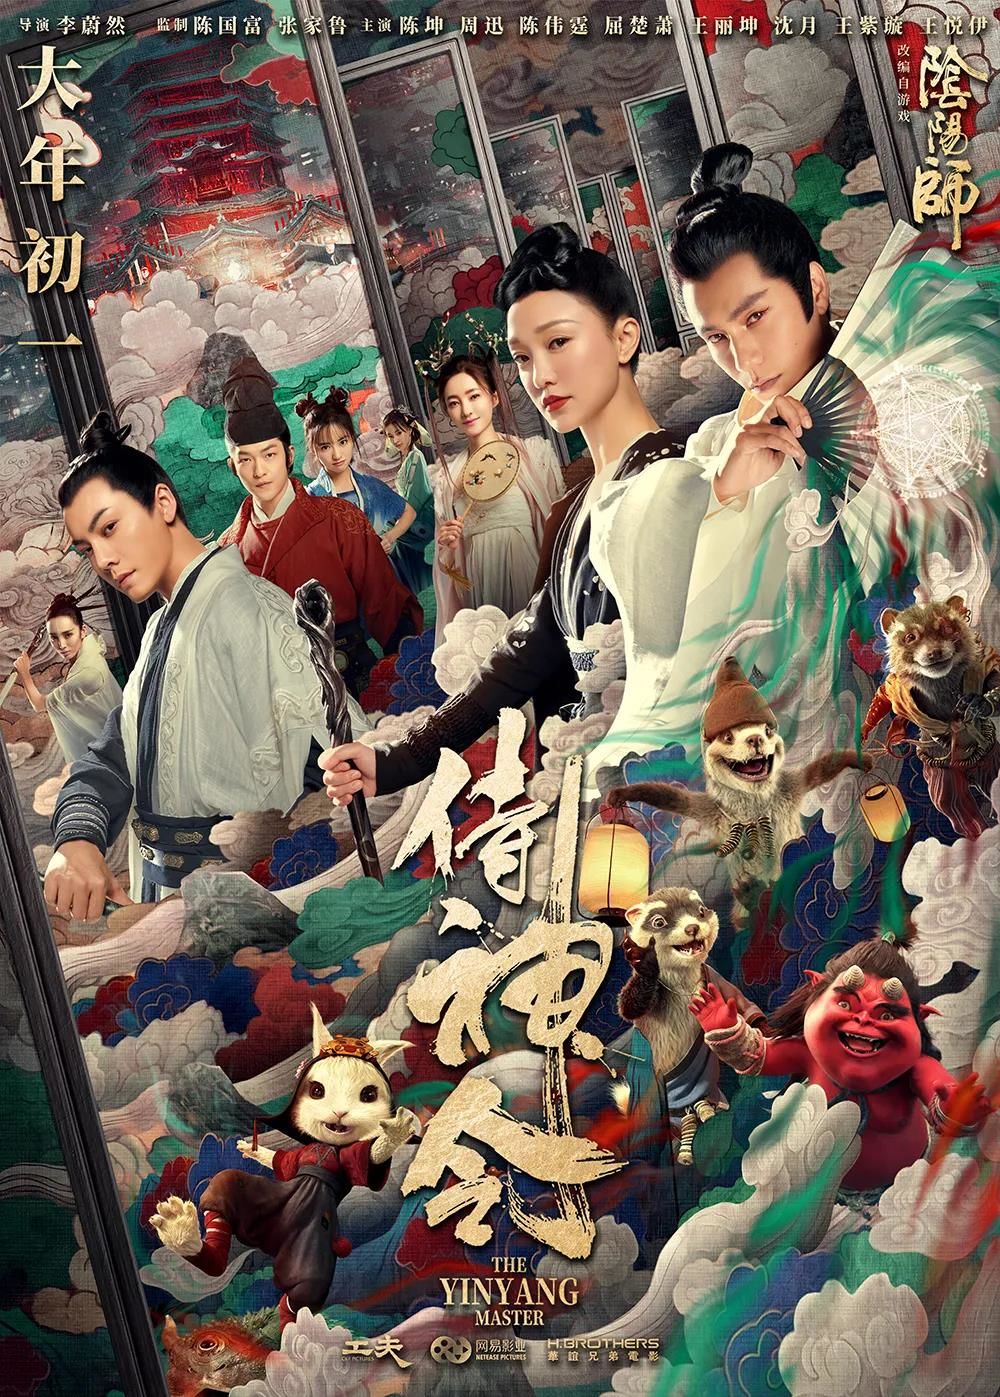 Phim mới của Trần Khôn: Âm Dương Sư: Thị trần lệnh - The Yin Yang Master (2021)